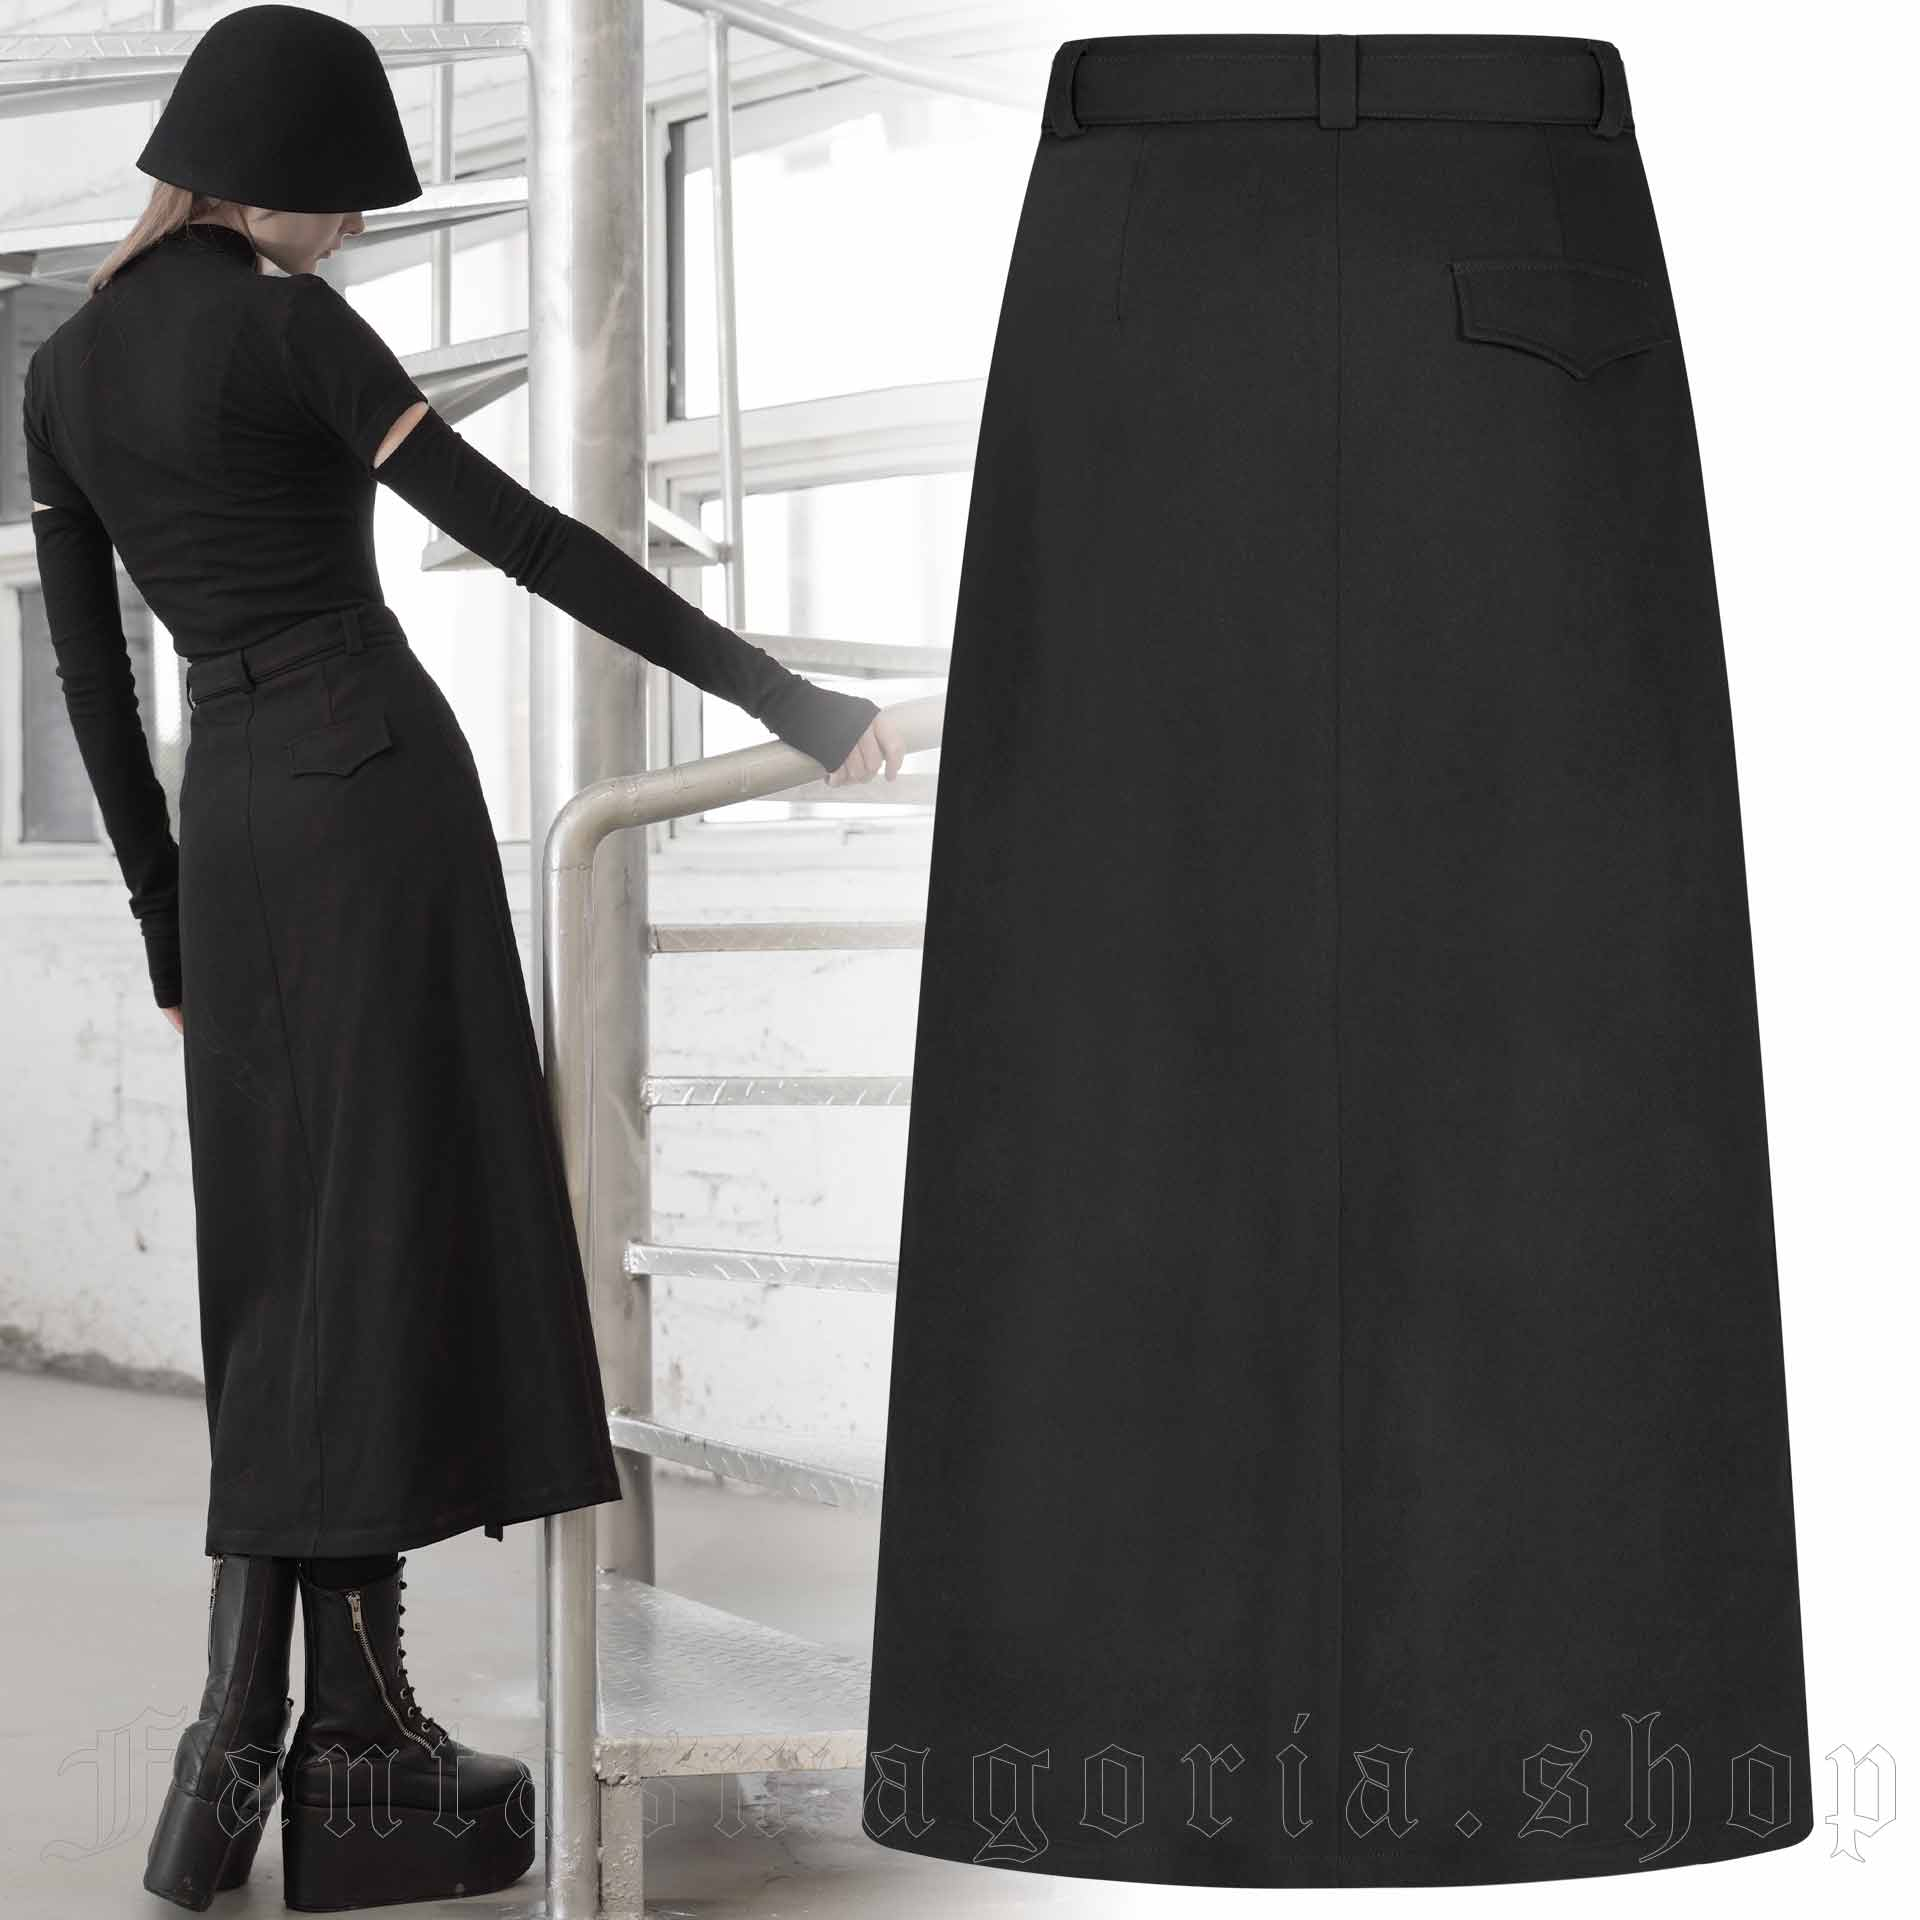 Noir Skirt by RAVE brand